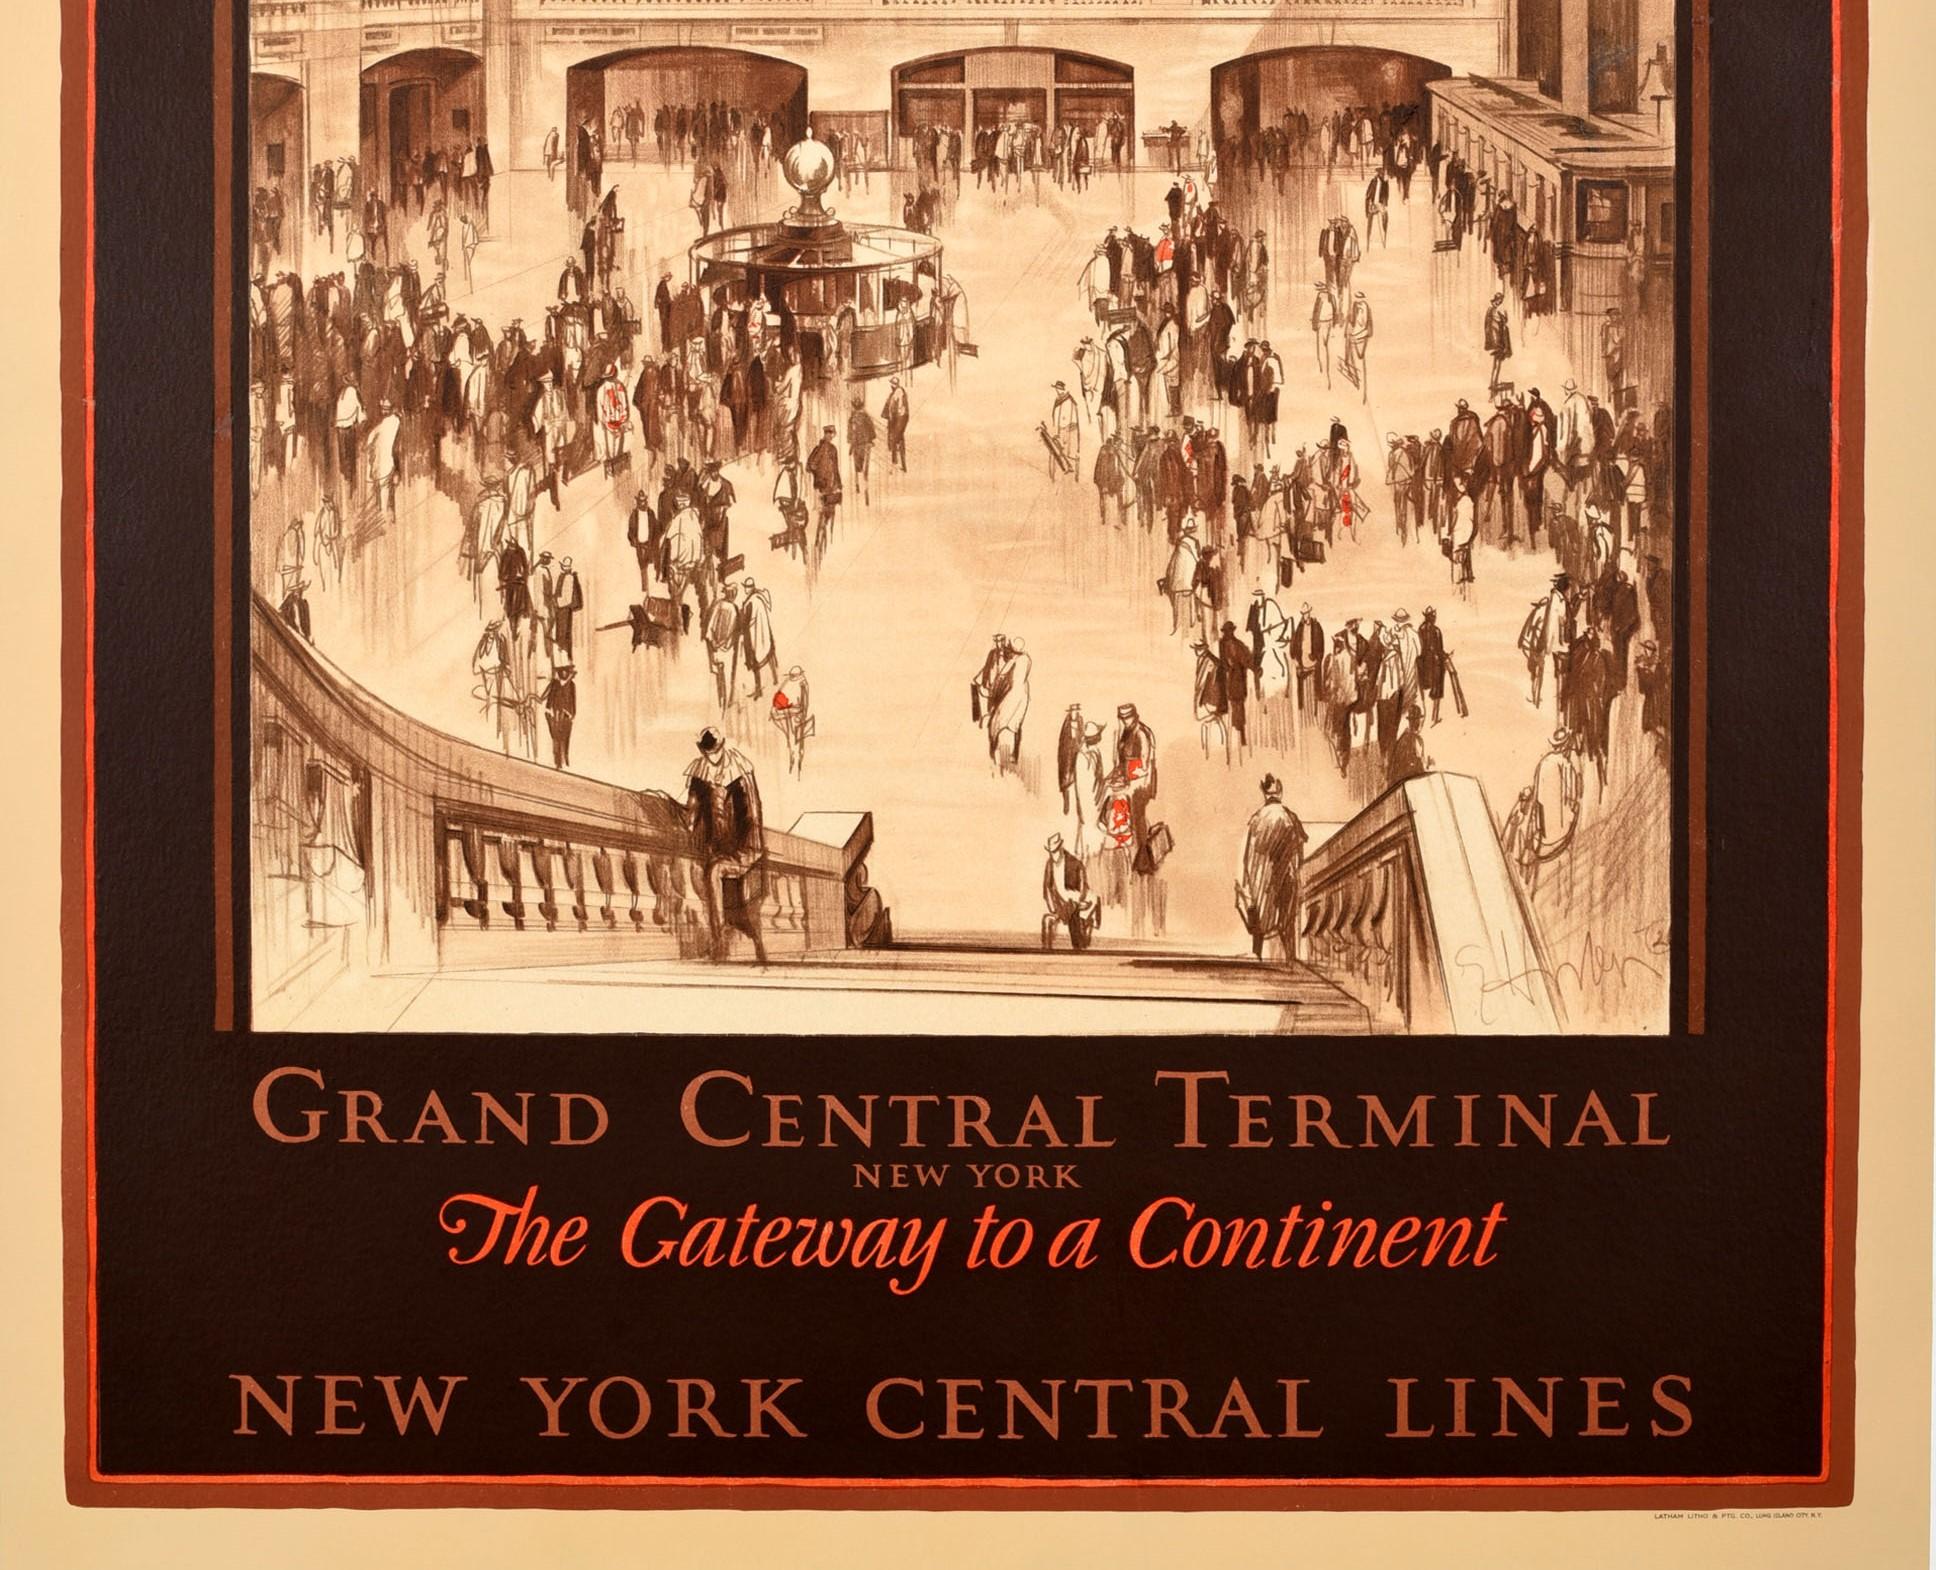 Original Vintage-Reise-Werbeplakat - Grand Central Terminal New York The Gateway to a Continent New York Central Lines. Atemberaubende Skizze Stil Kunstwerk von der amerikanischen Maler, Radierer und Illustrator Earl Horter (1881-1940) zeigt eine